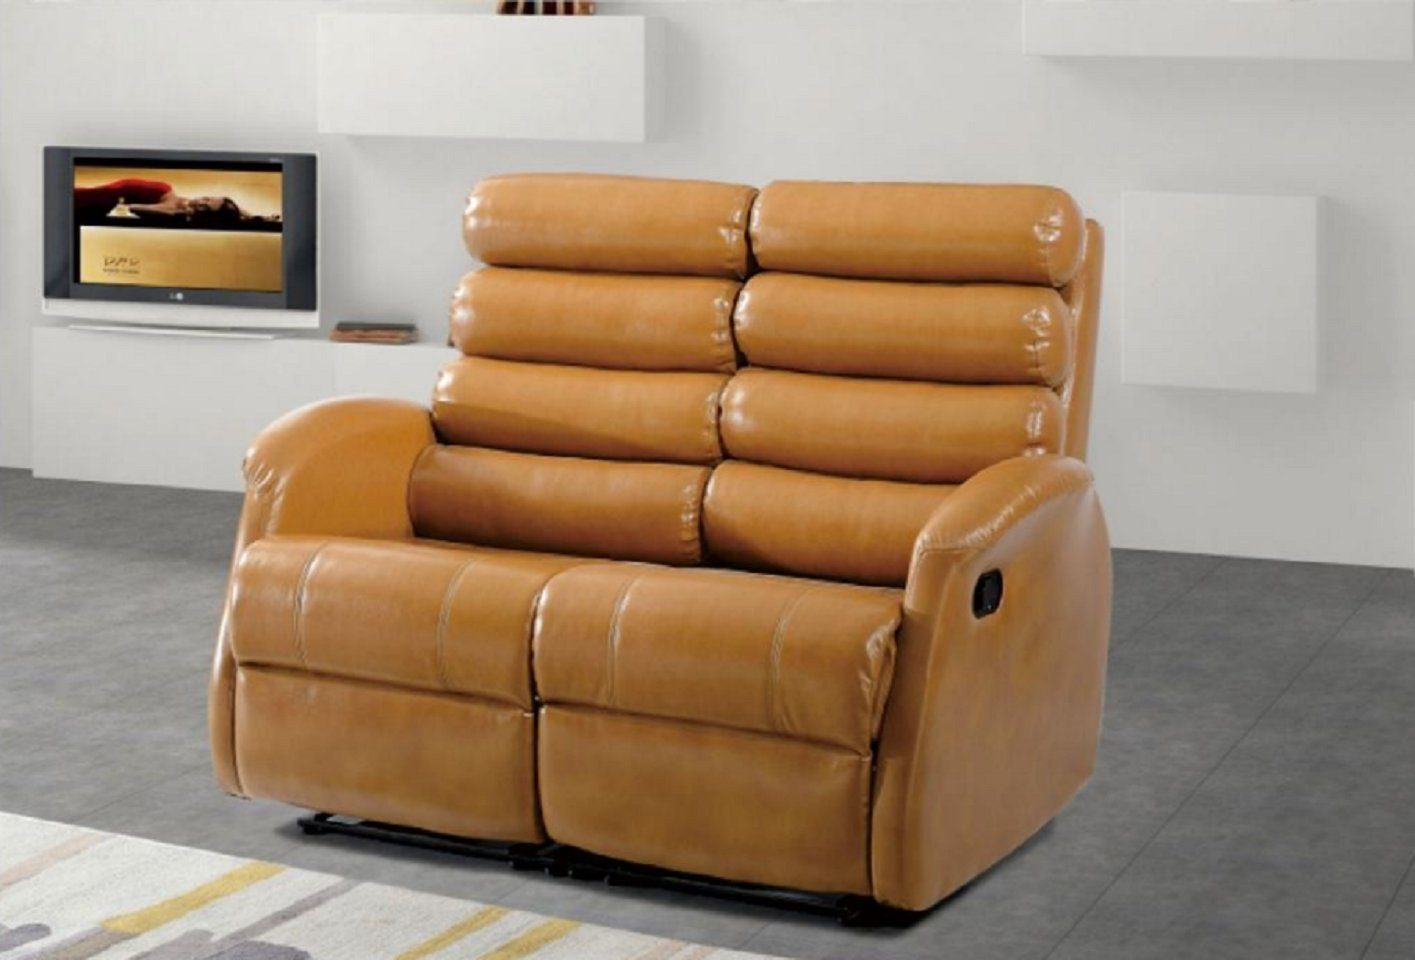 JVmoebel 2-Sitzer Moderne Zweisitzer Couch Polster Design Wohnzimmer Möbel Braun, 1 Teile, Made in Europe | Einzelsofas